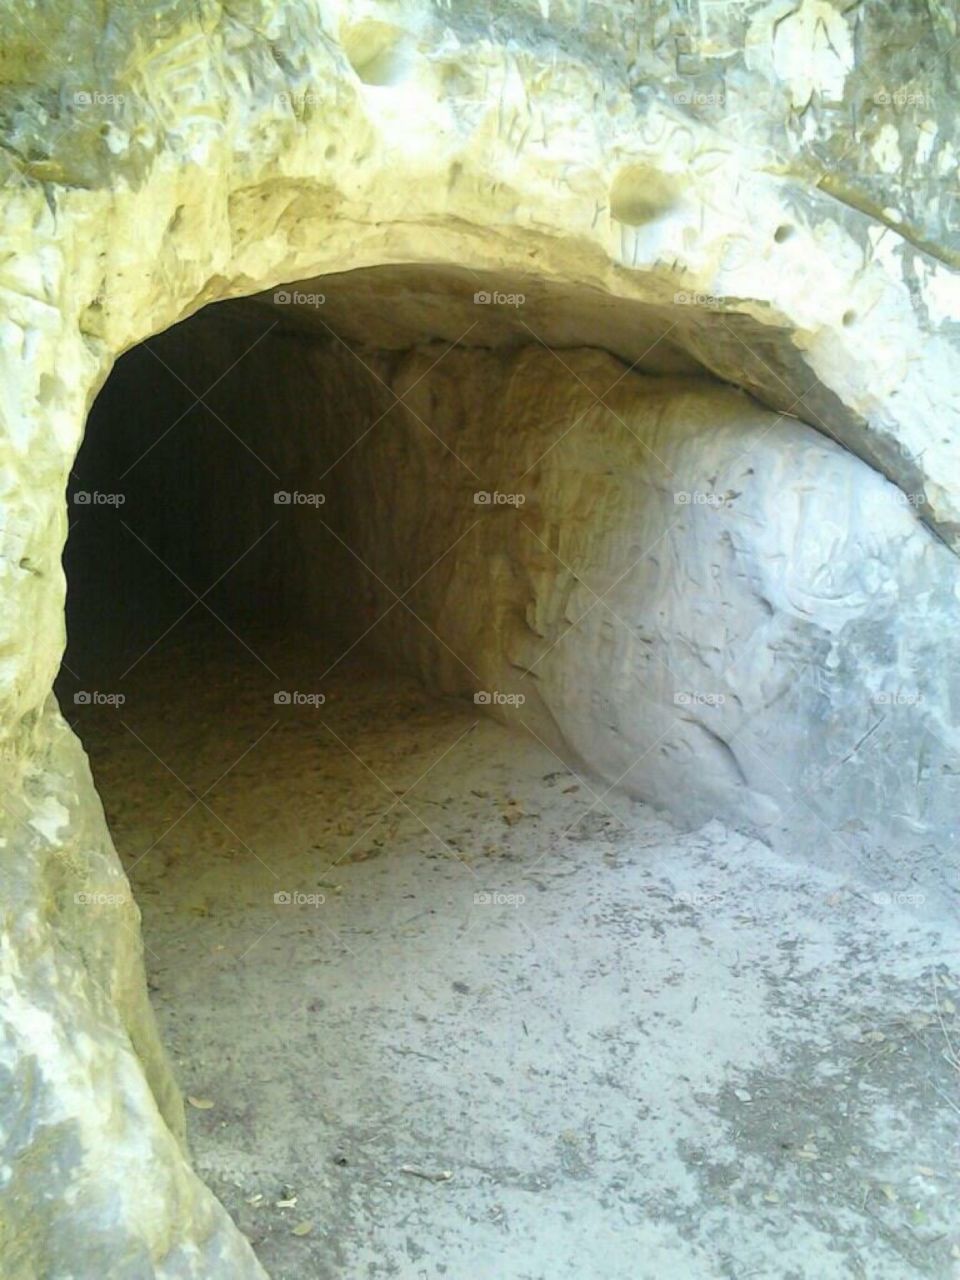 Cave @ black diamond mines